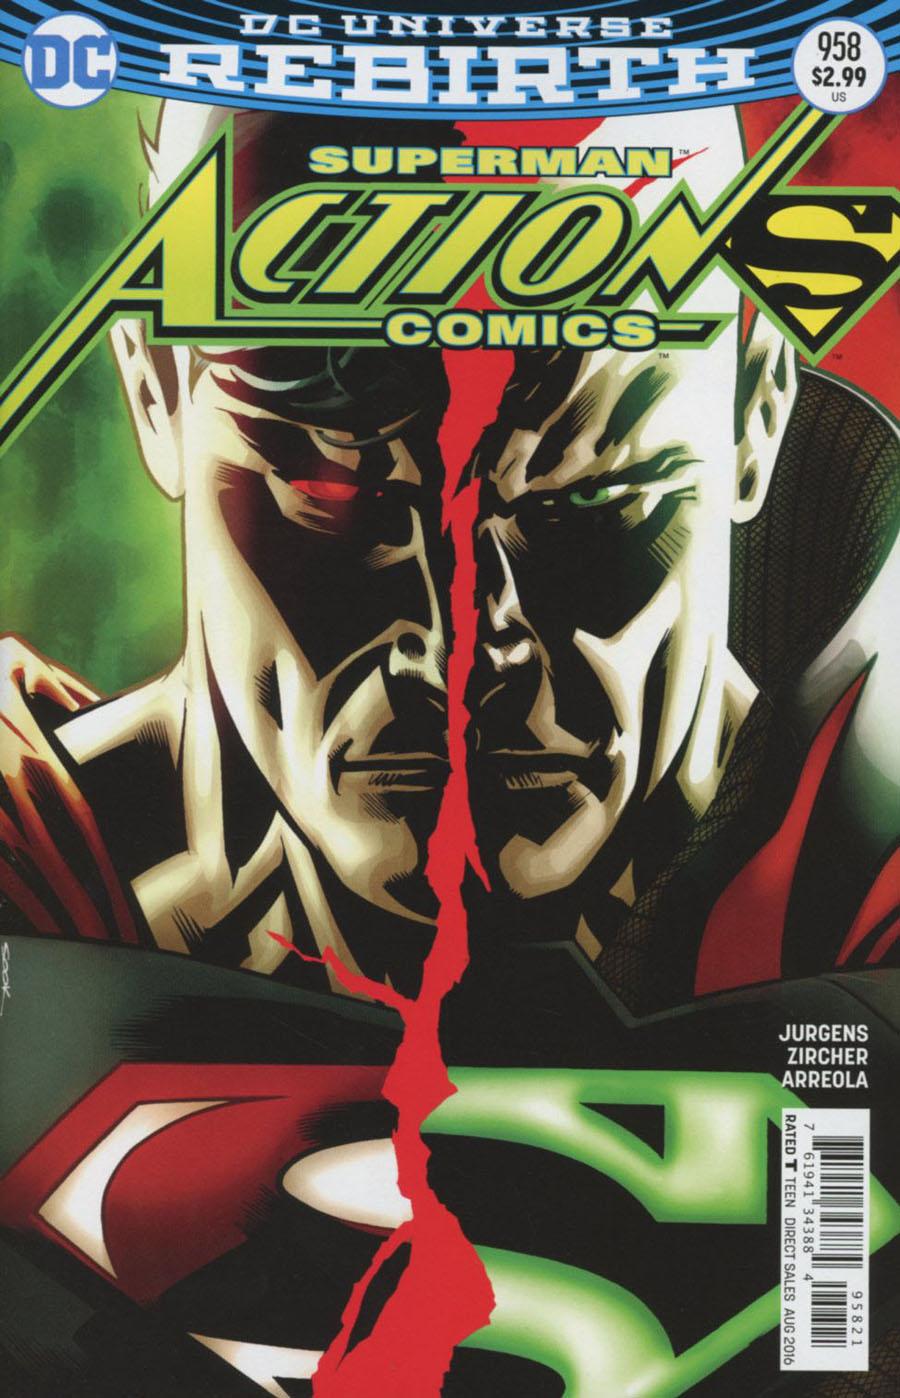 Action Comics Vol. 2 #958